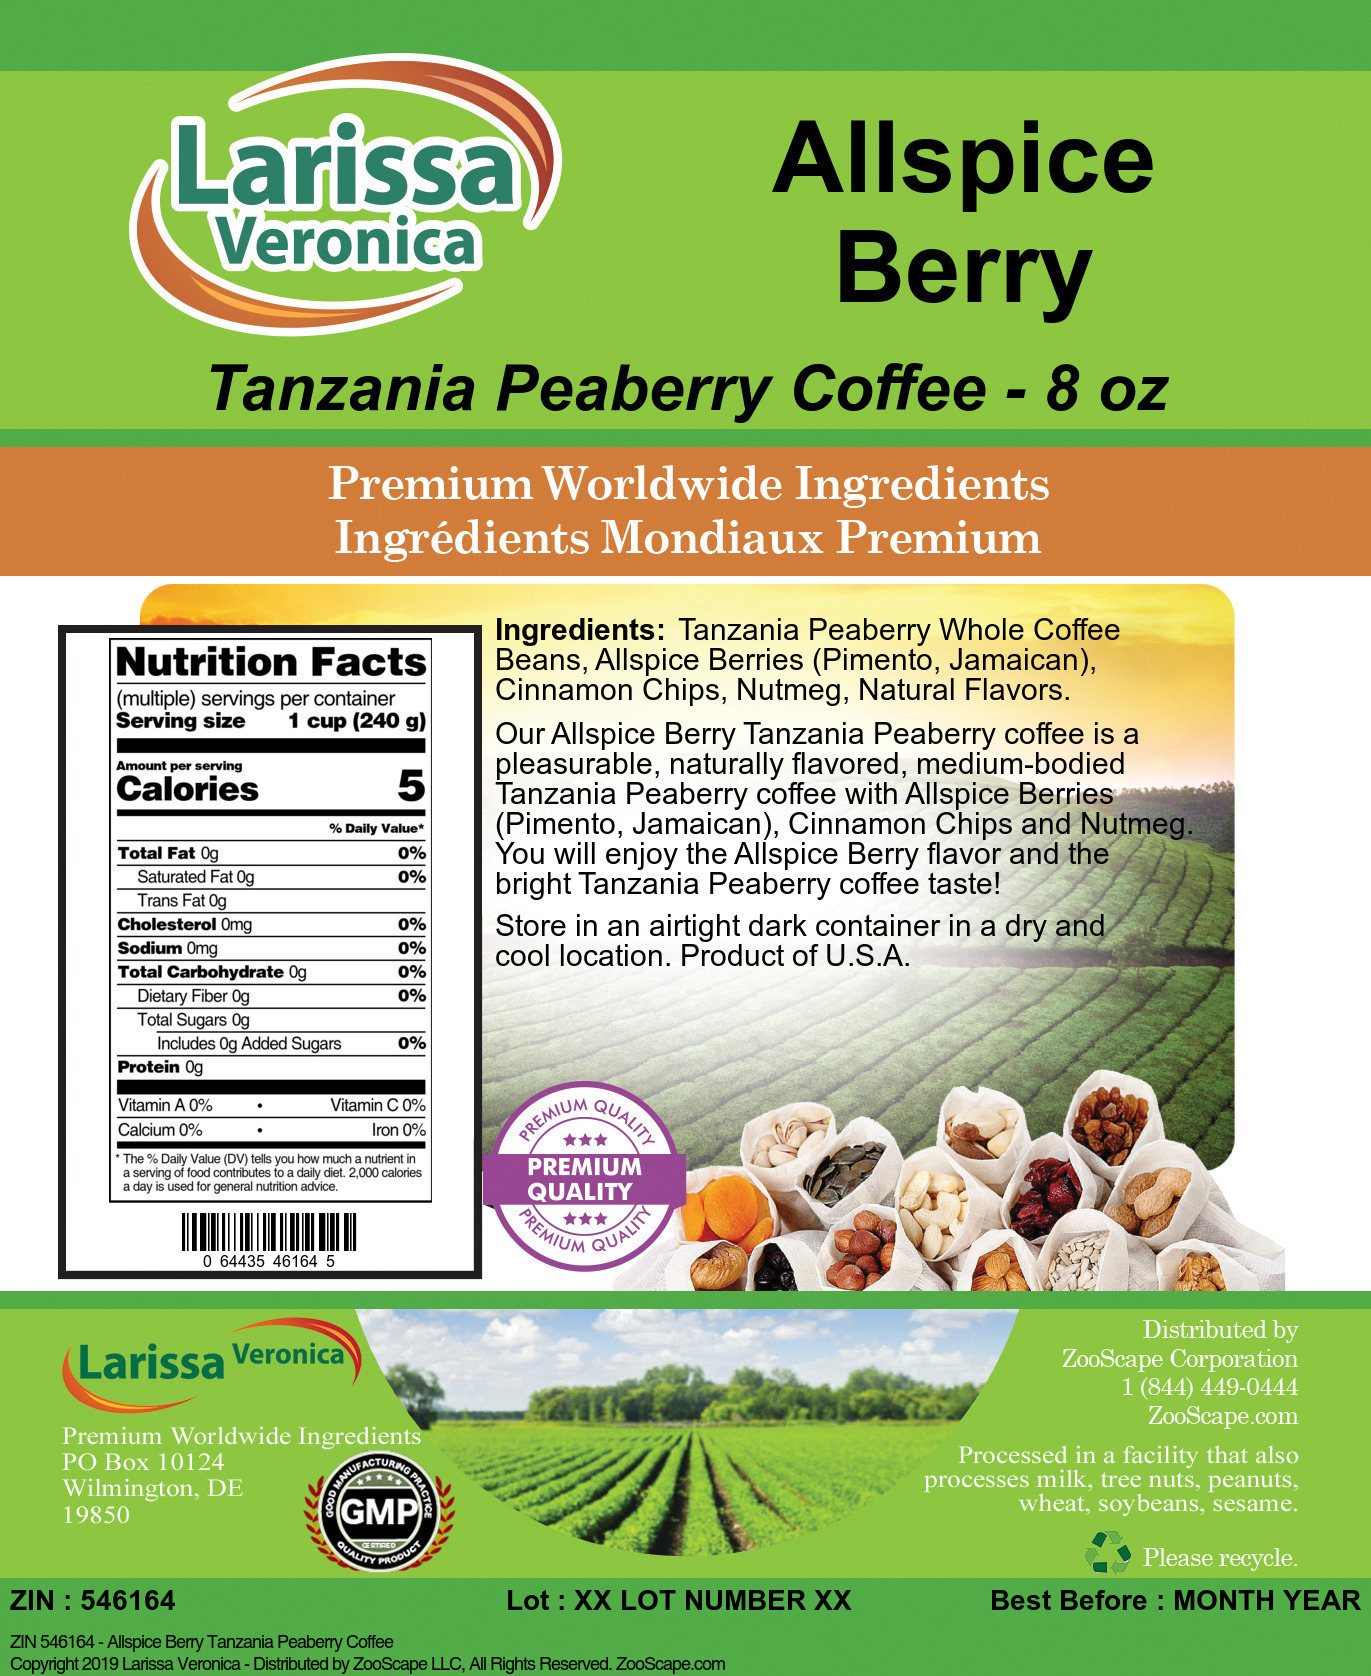 Allspice Berry Tanzania Peaberry Coffee - Label